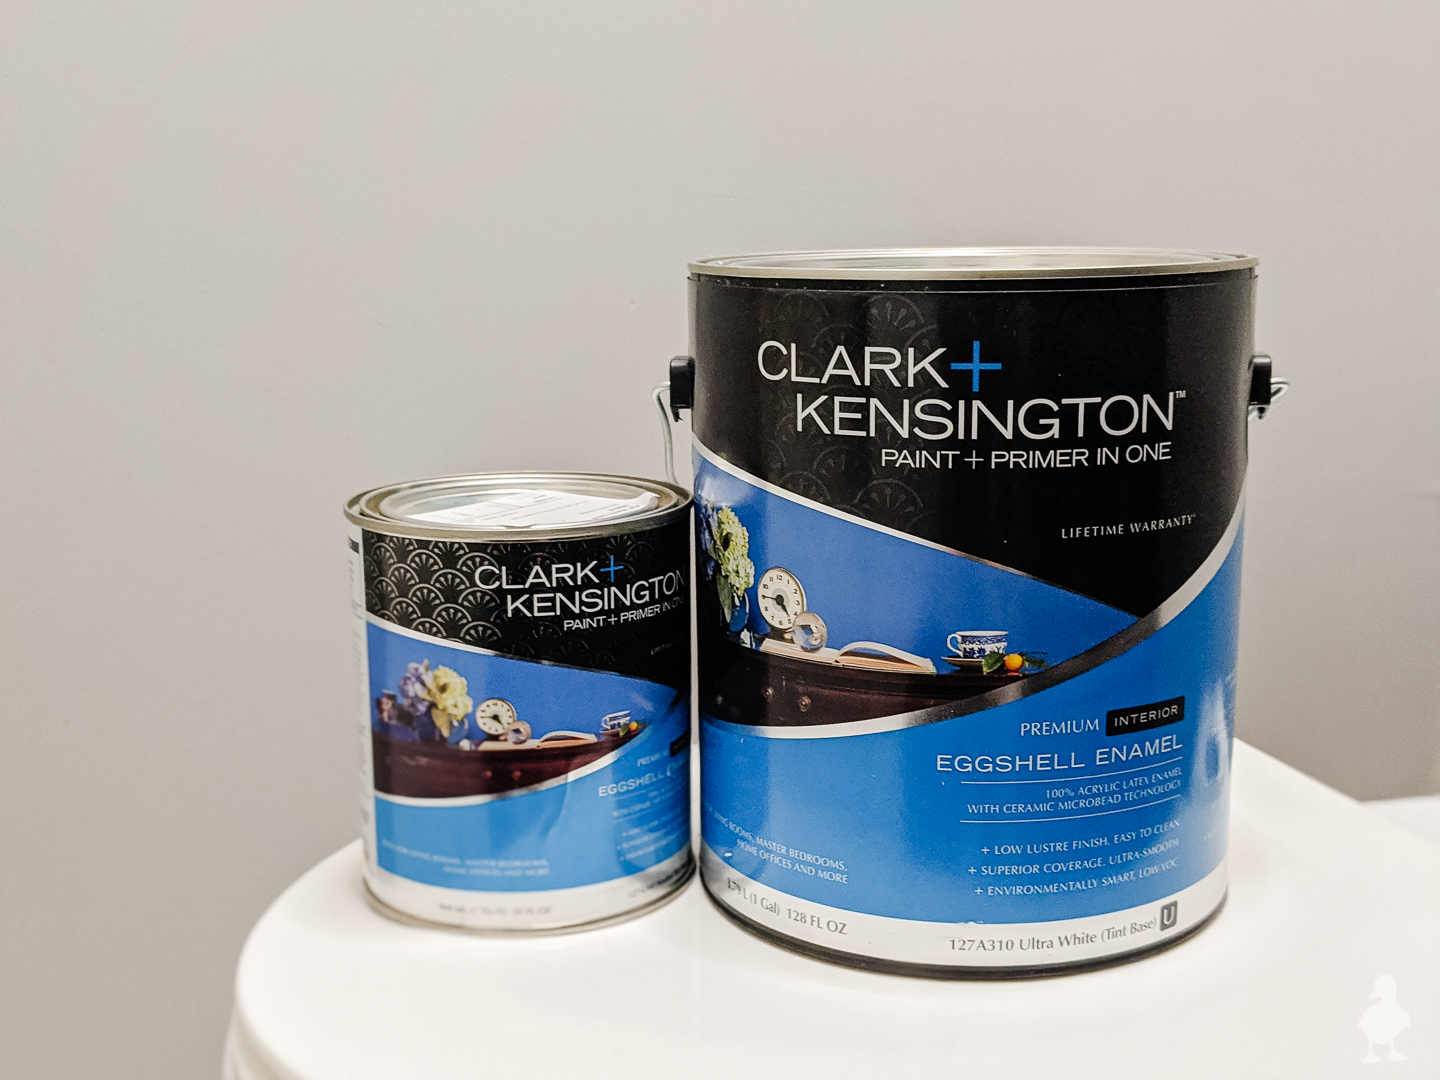 Clark+Kensington paint